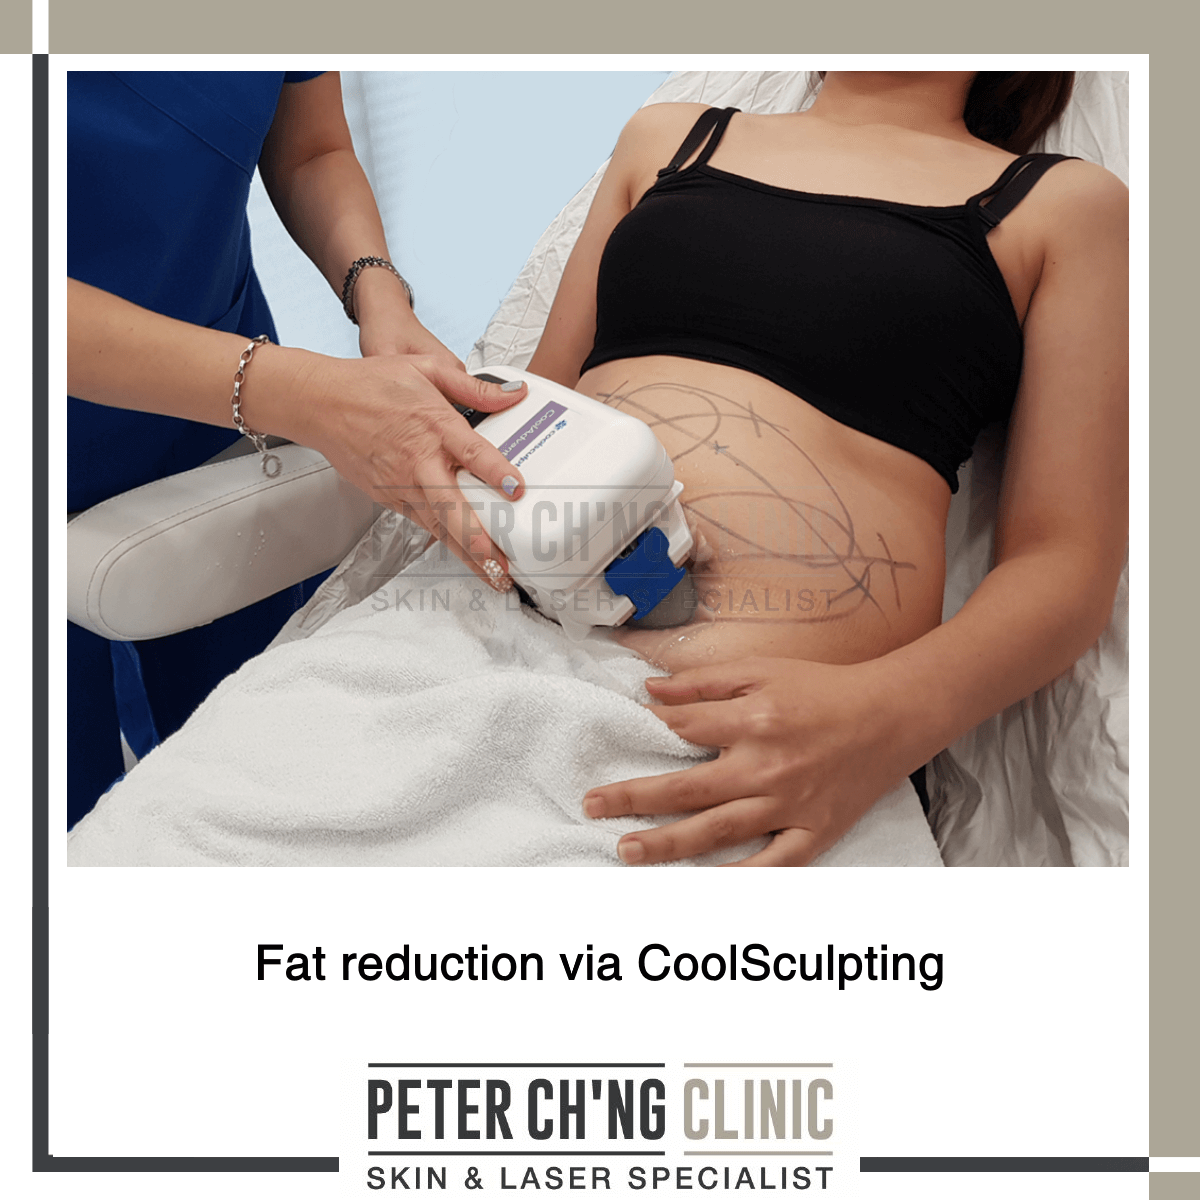 Fat reduction via CoolSculpting